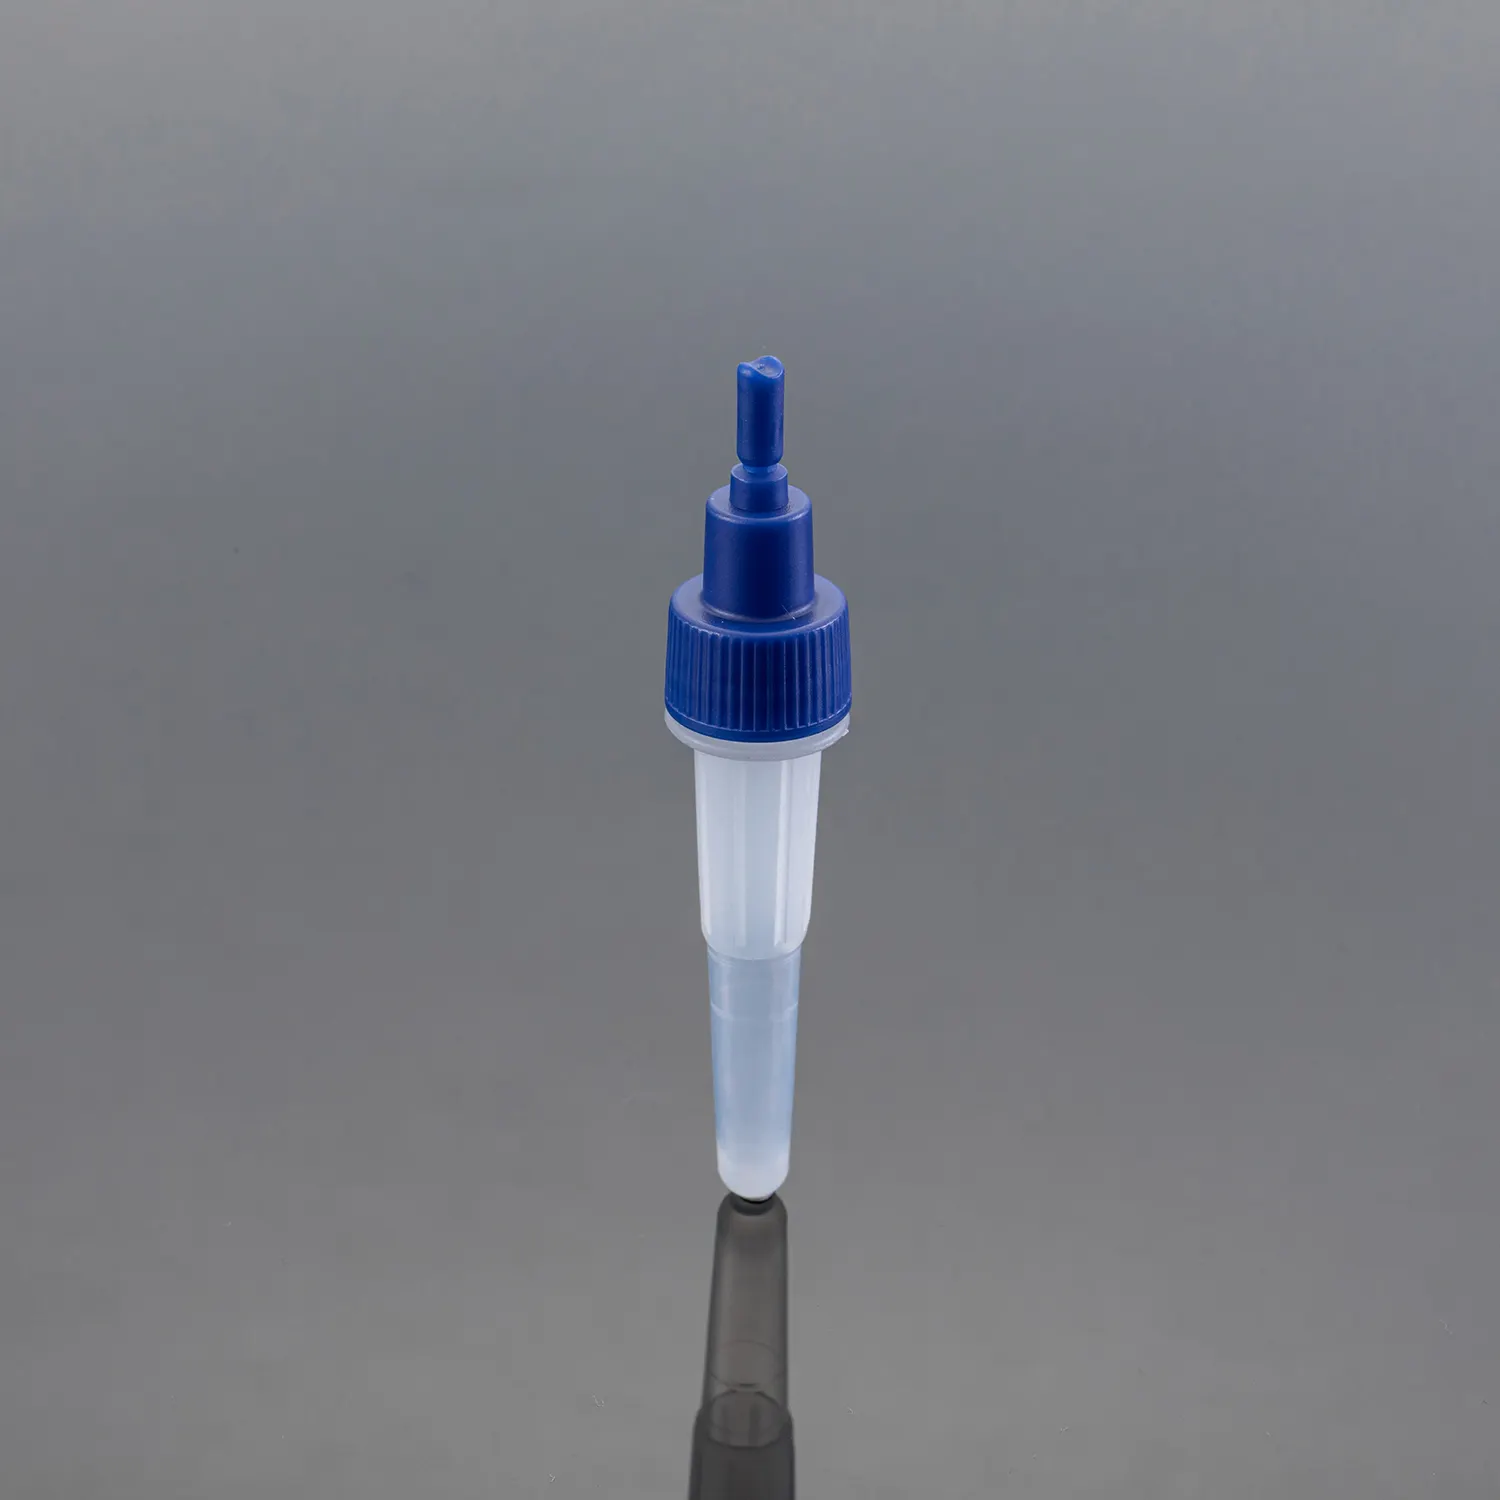 Lab DNA Rna tek kullanımlık kan testi tüpü depolama çekirdeği asit plastik ekstraksiyon tüpü in Vitro tanı için filtre ile